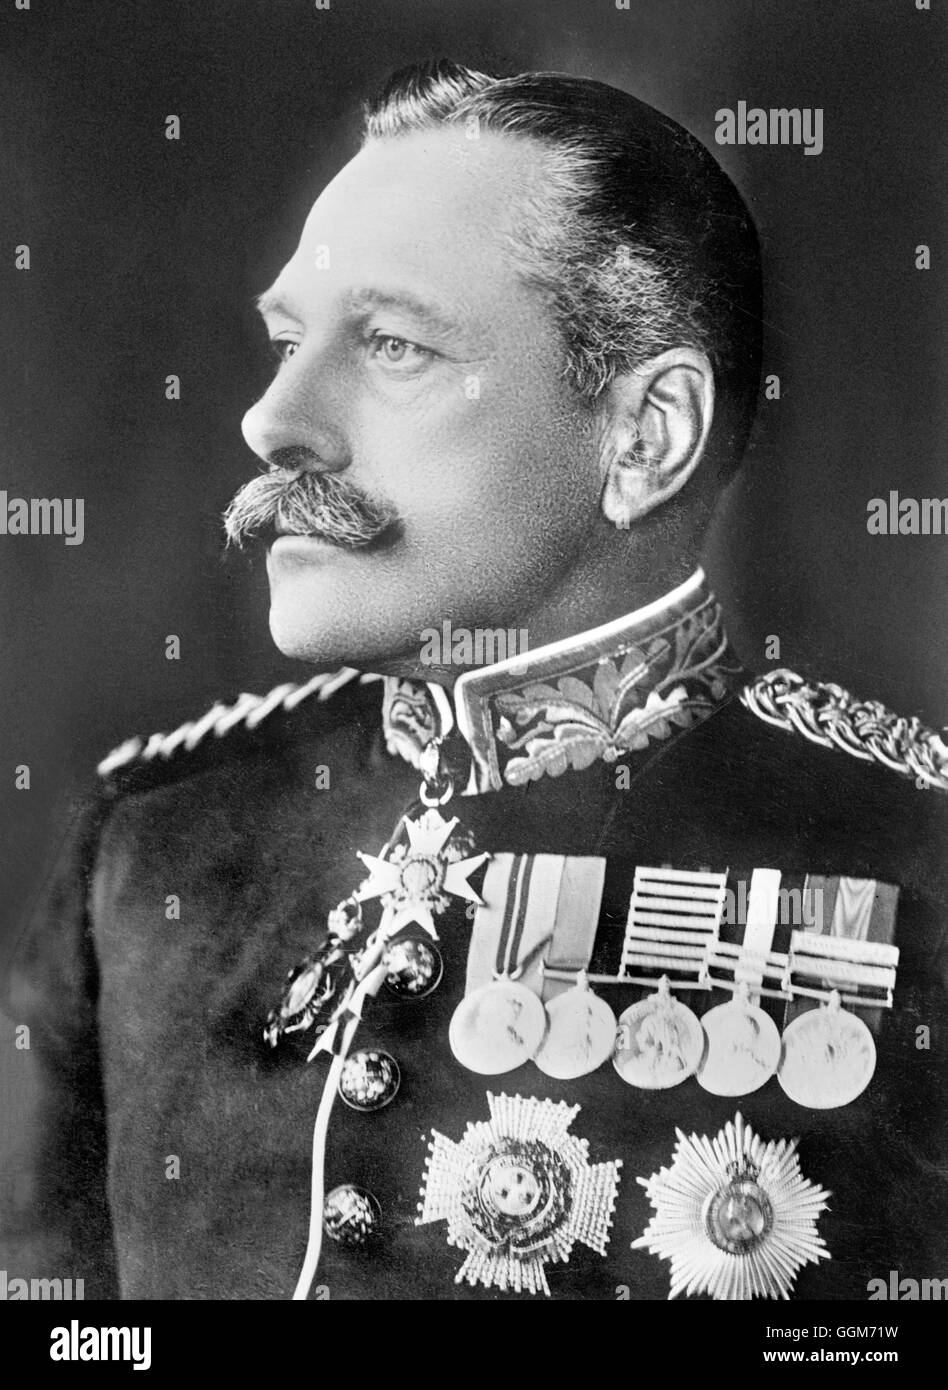 Douglas Haig. Portrait du maréchal Douglas Haig, 1er comte Haig, (1861-1928). Photo de Bain News Service, c.1915 Banque D'Images